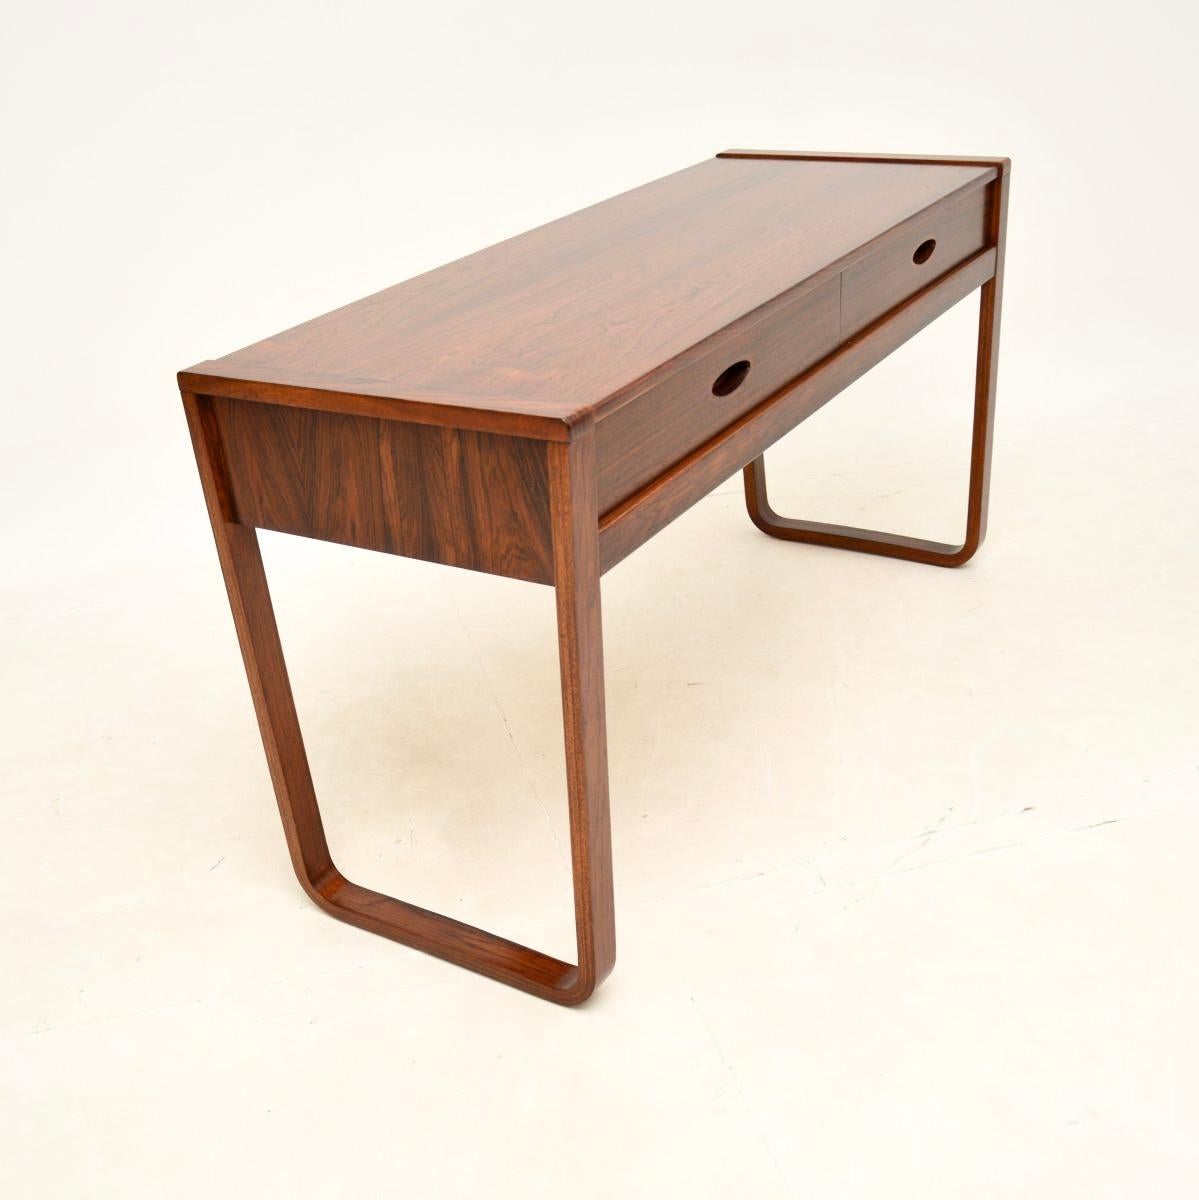 British Vintage Console Table / Desk by Uniflex For Sale